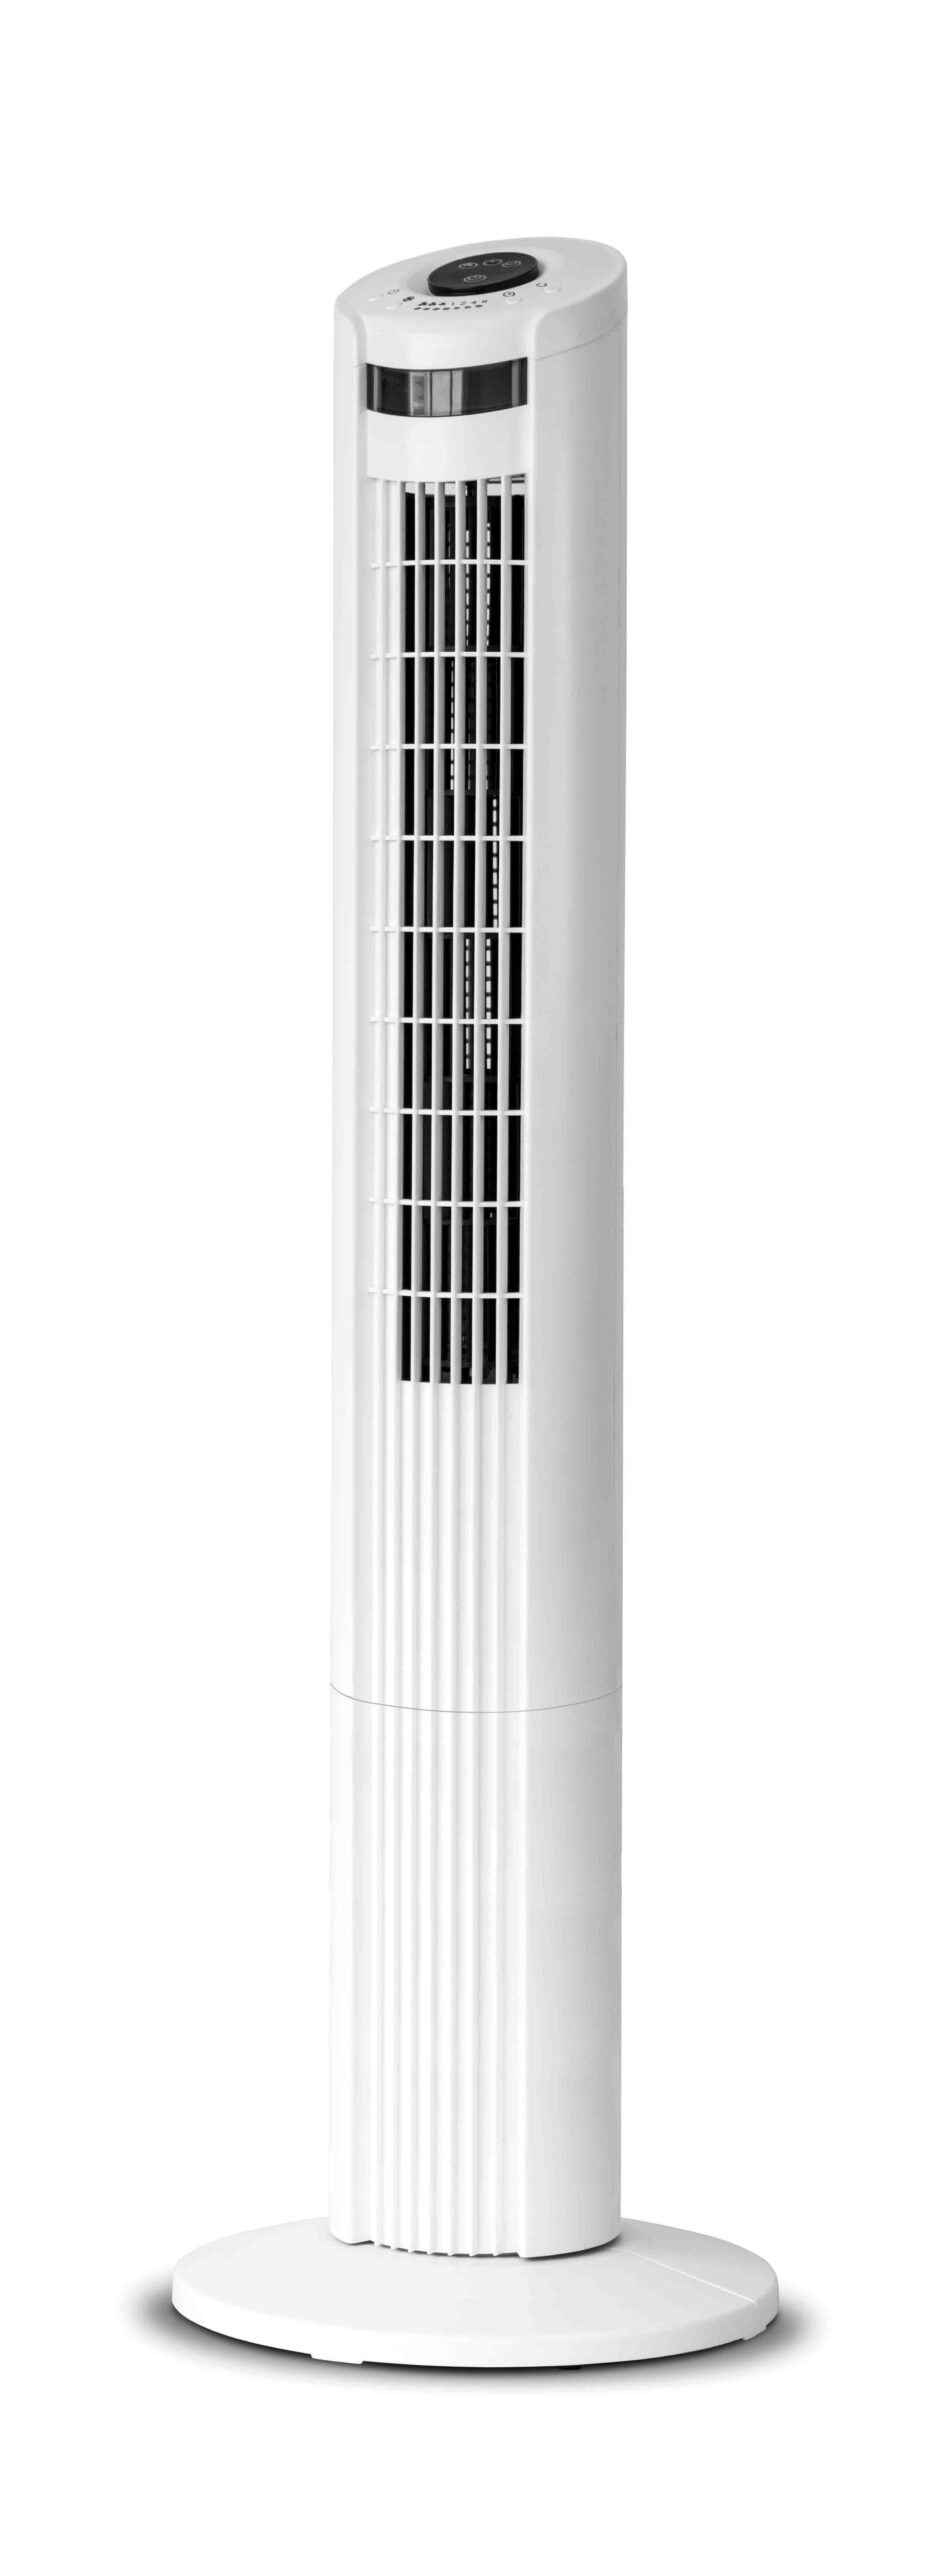 Ventilatore Bianco Torre T 55w Ev011 8016818100117